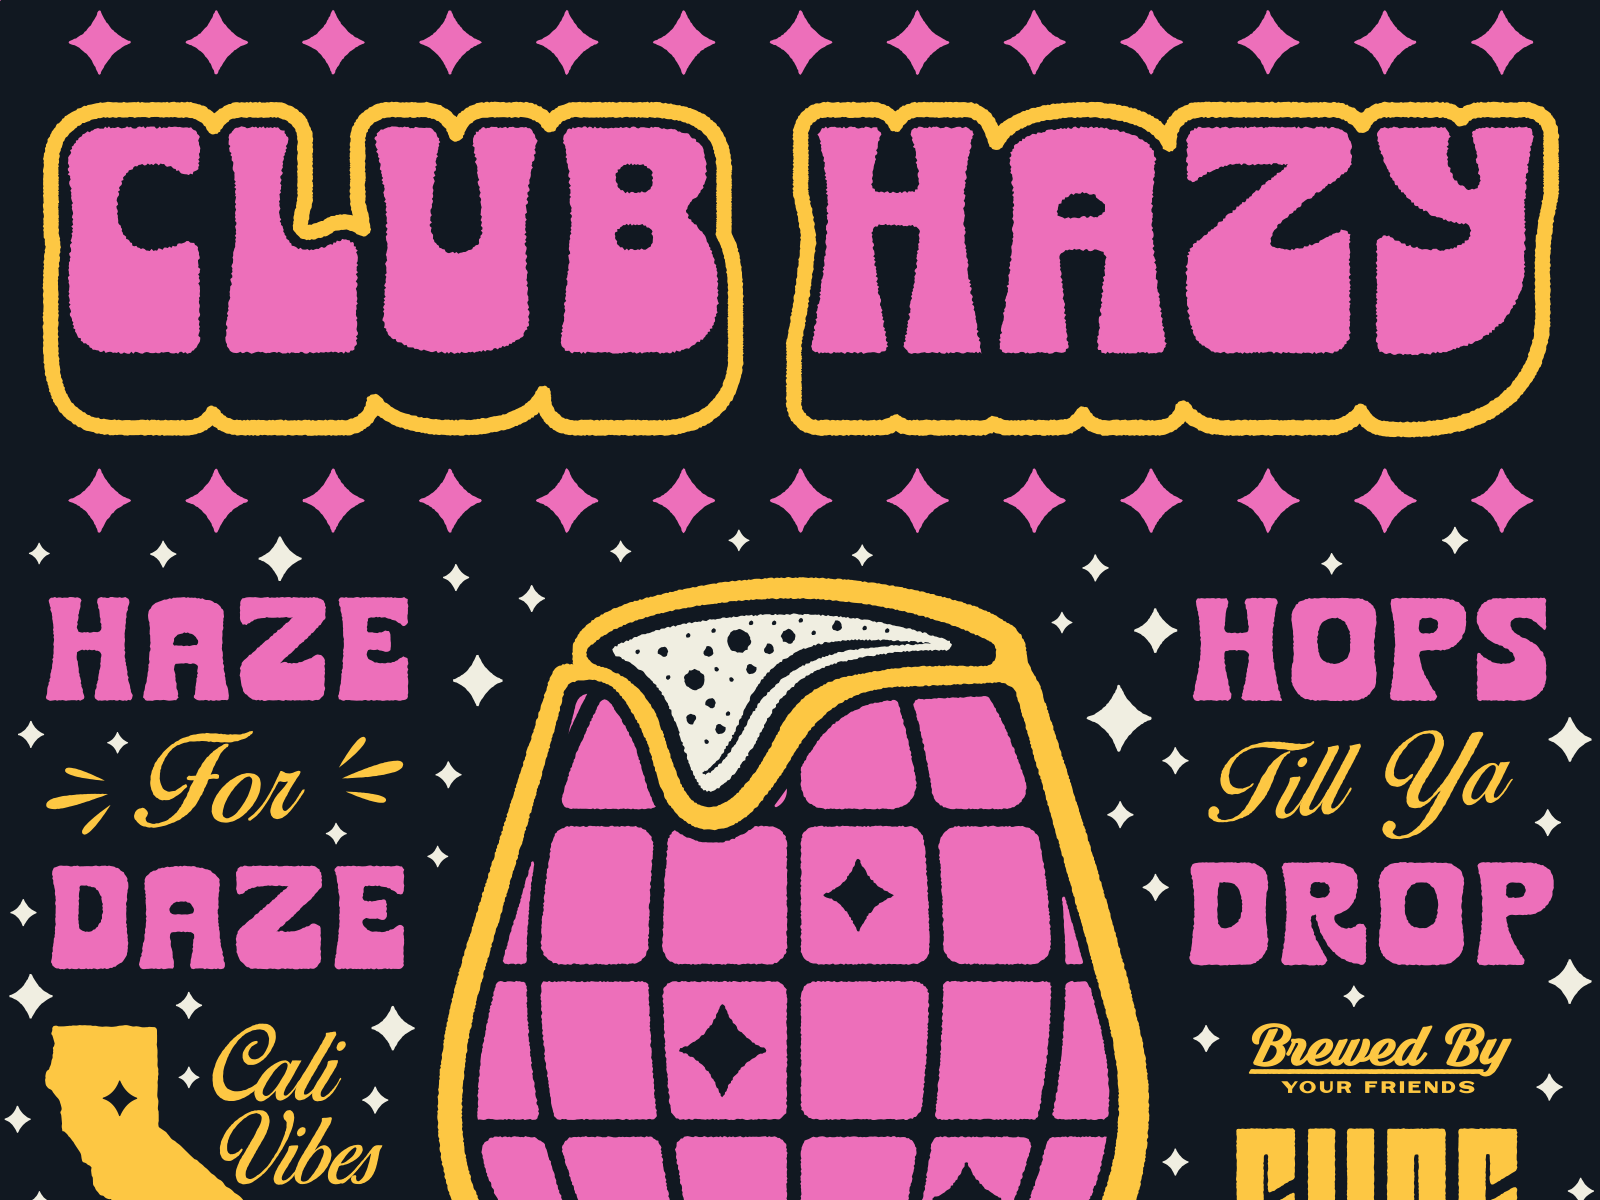 CLUB HAZY by Brethren Design Co on Dribbble